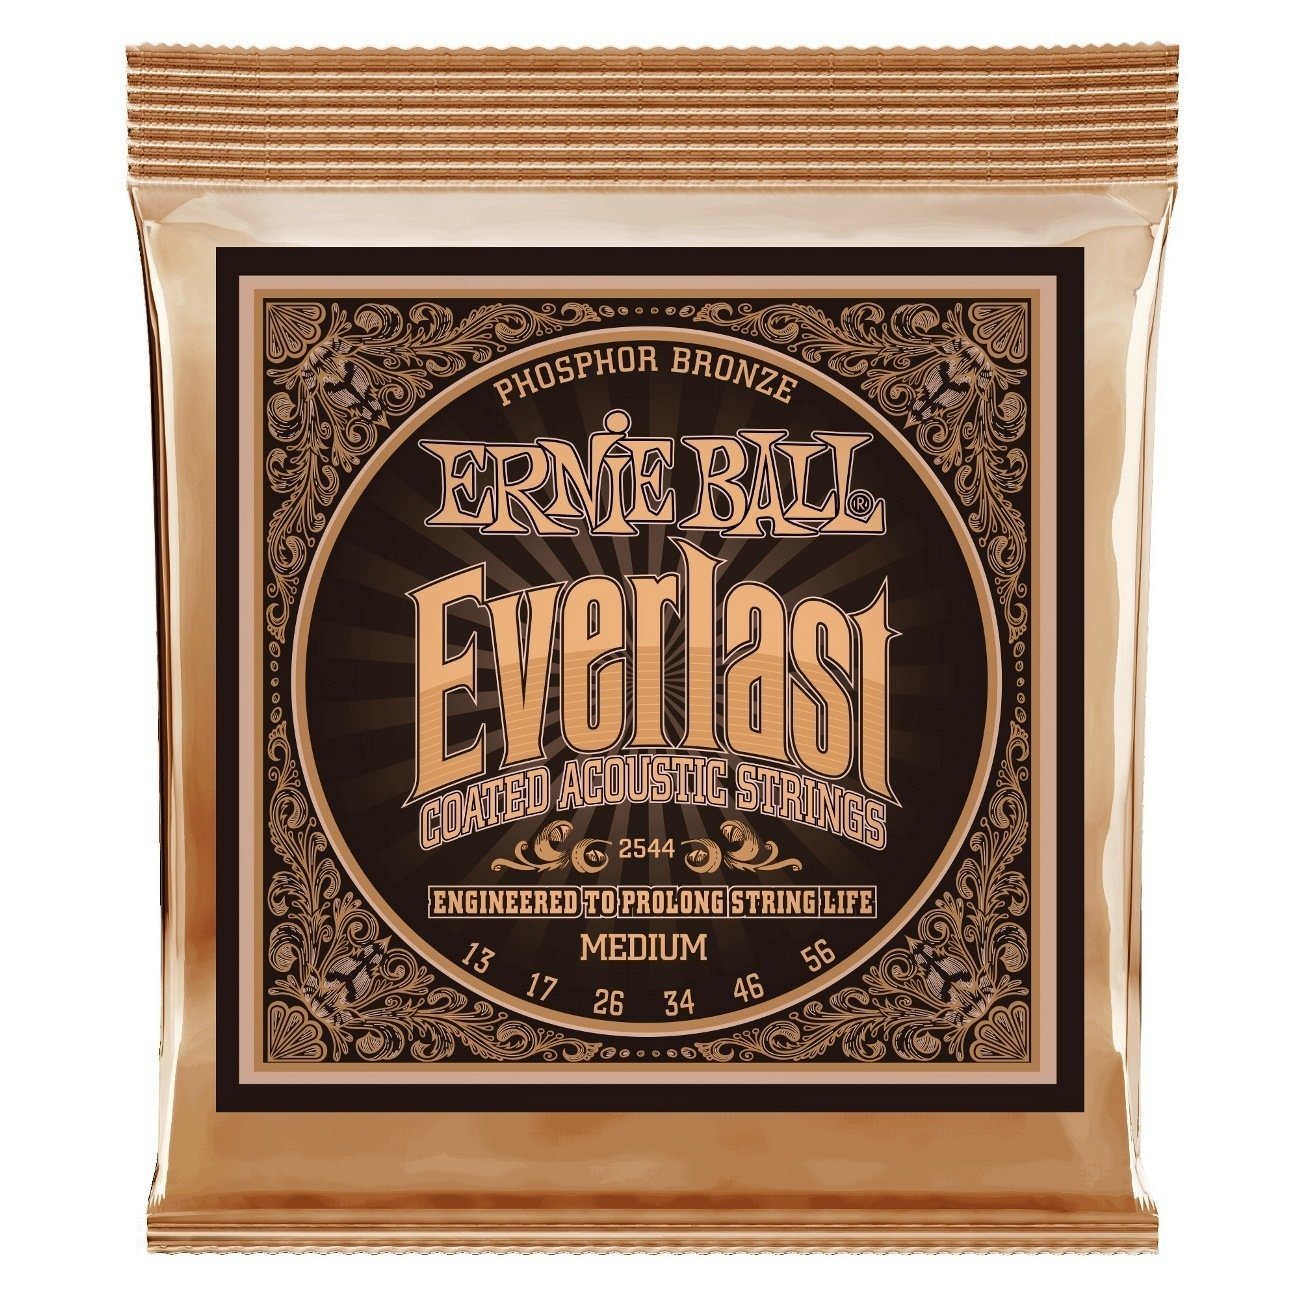 Akusztikus gitárhúrok Ernie Ball 2544 Everlast